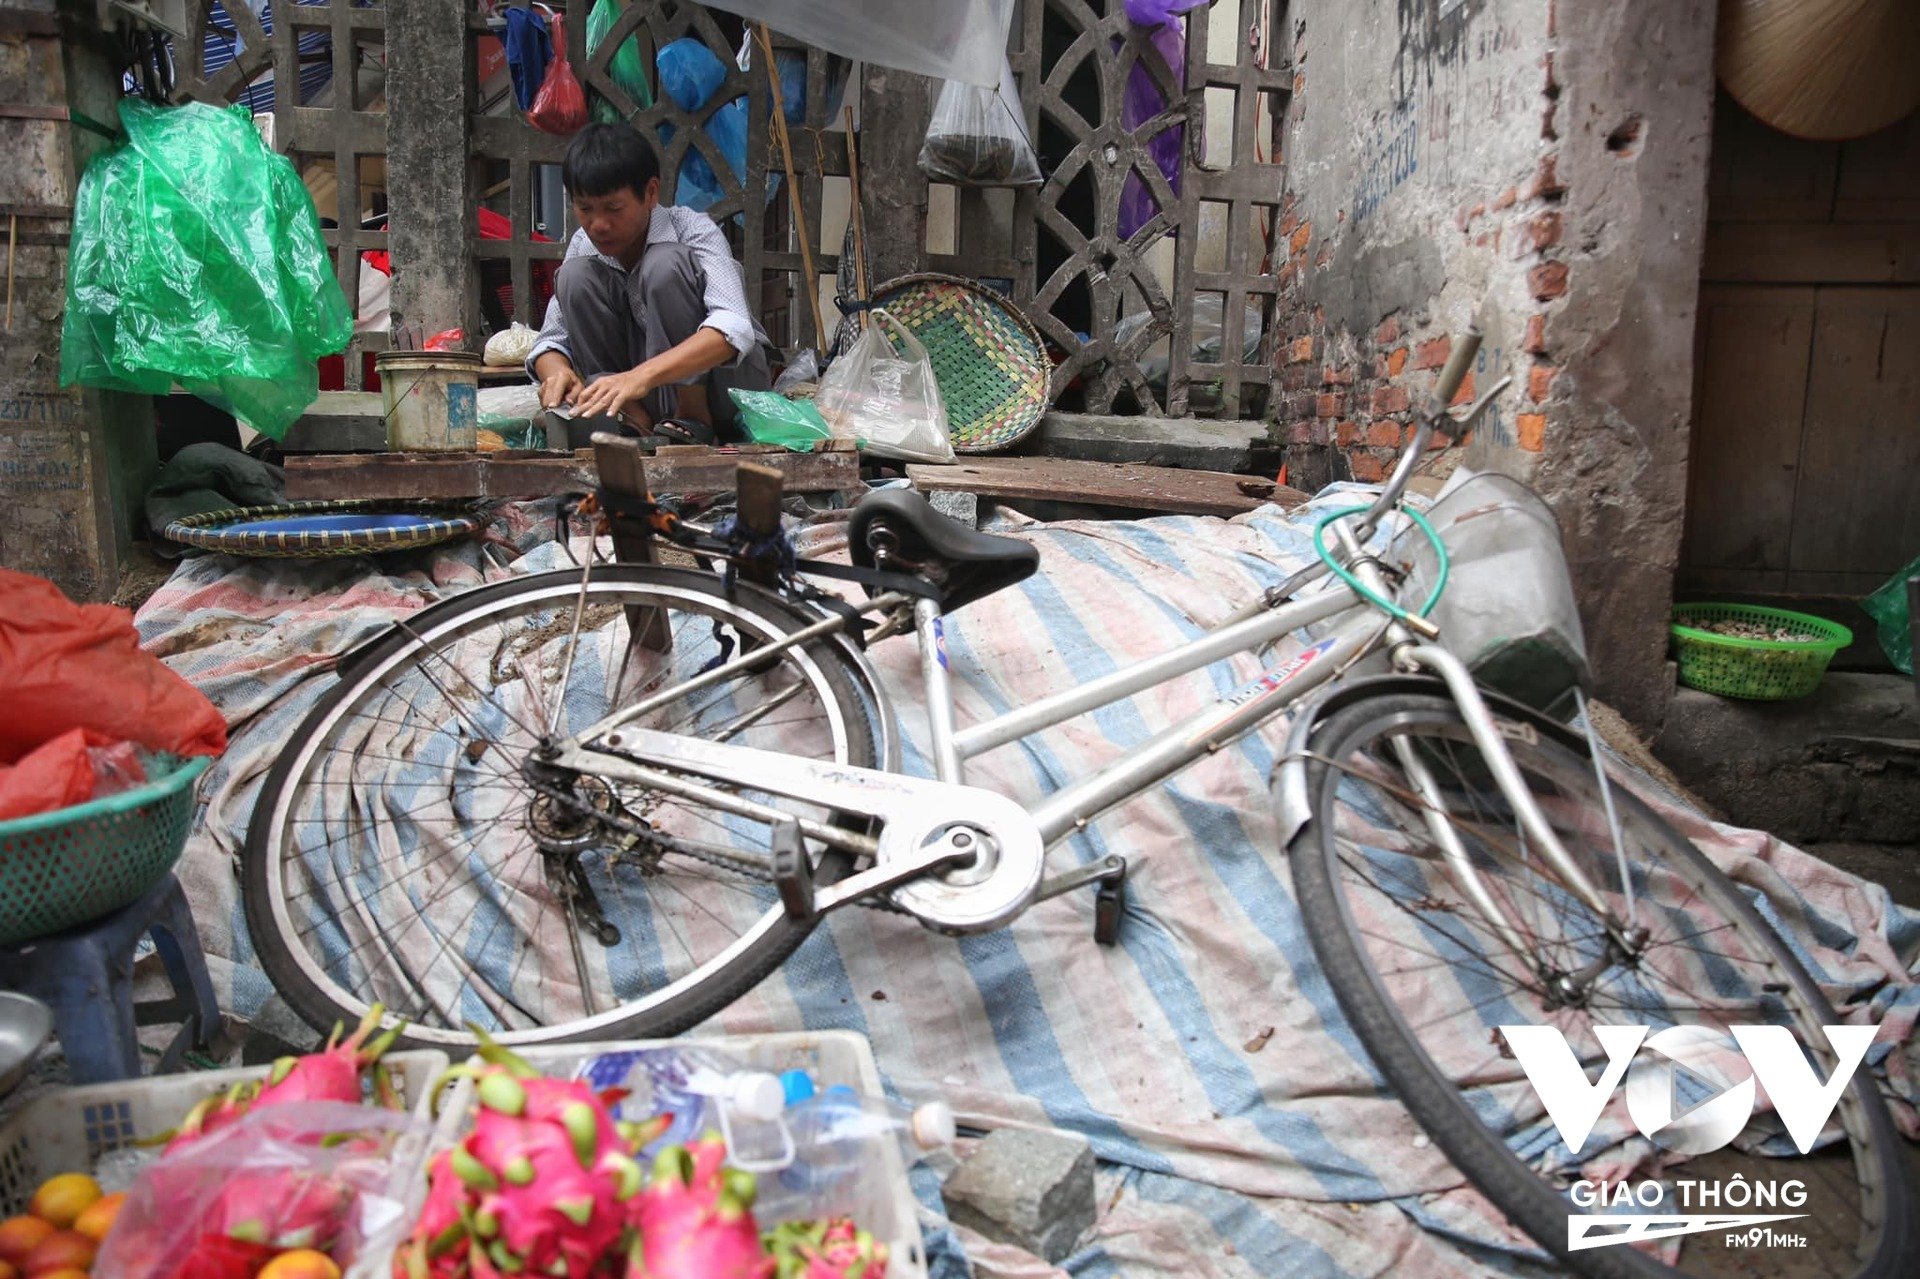 Phố cổ Hà Nội khá nhỏ, nên với nhiều người lao động, chỉ cần xe đạp là đủ, họ có thể di chuyển cơ động khắp nơi mà lại tiết kiệm chi phí